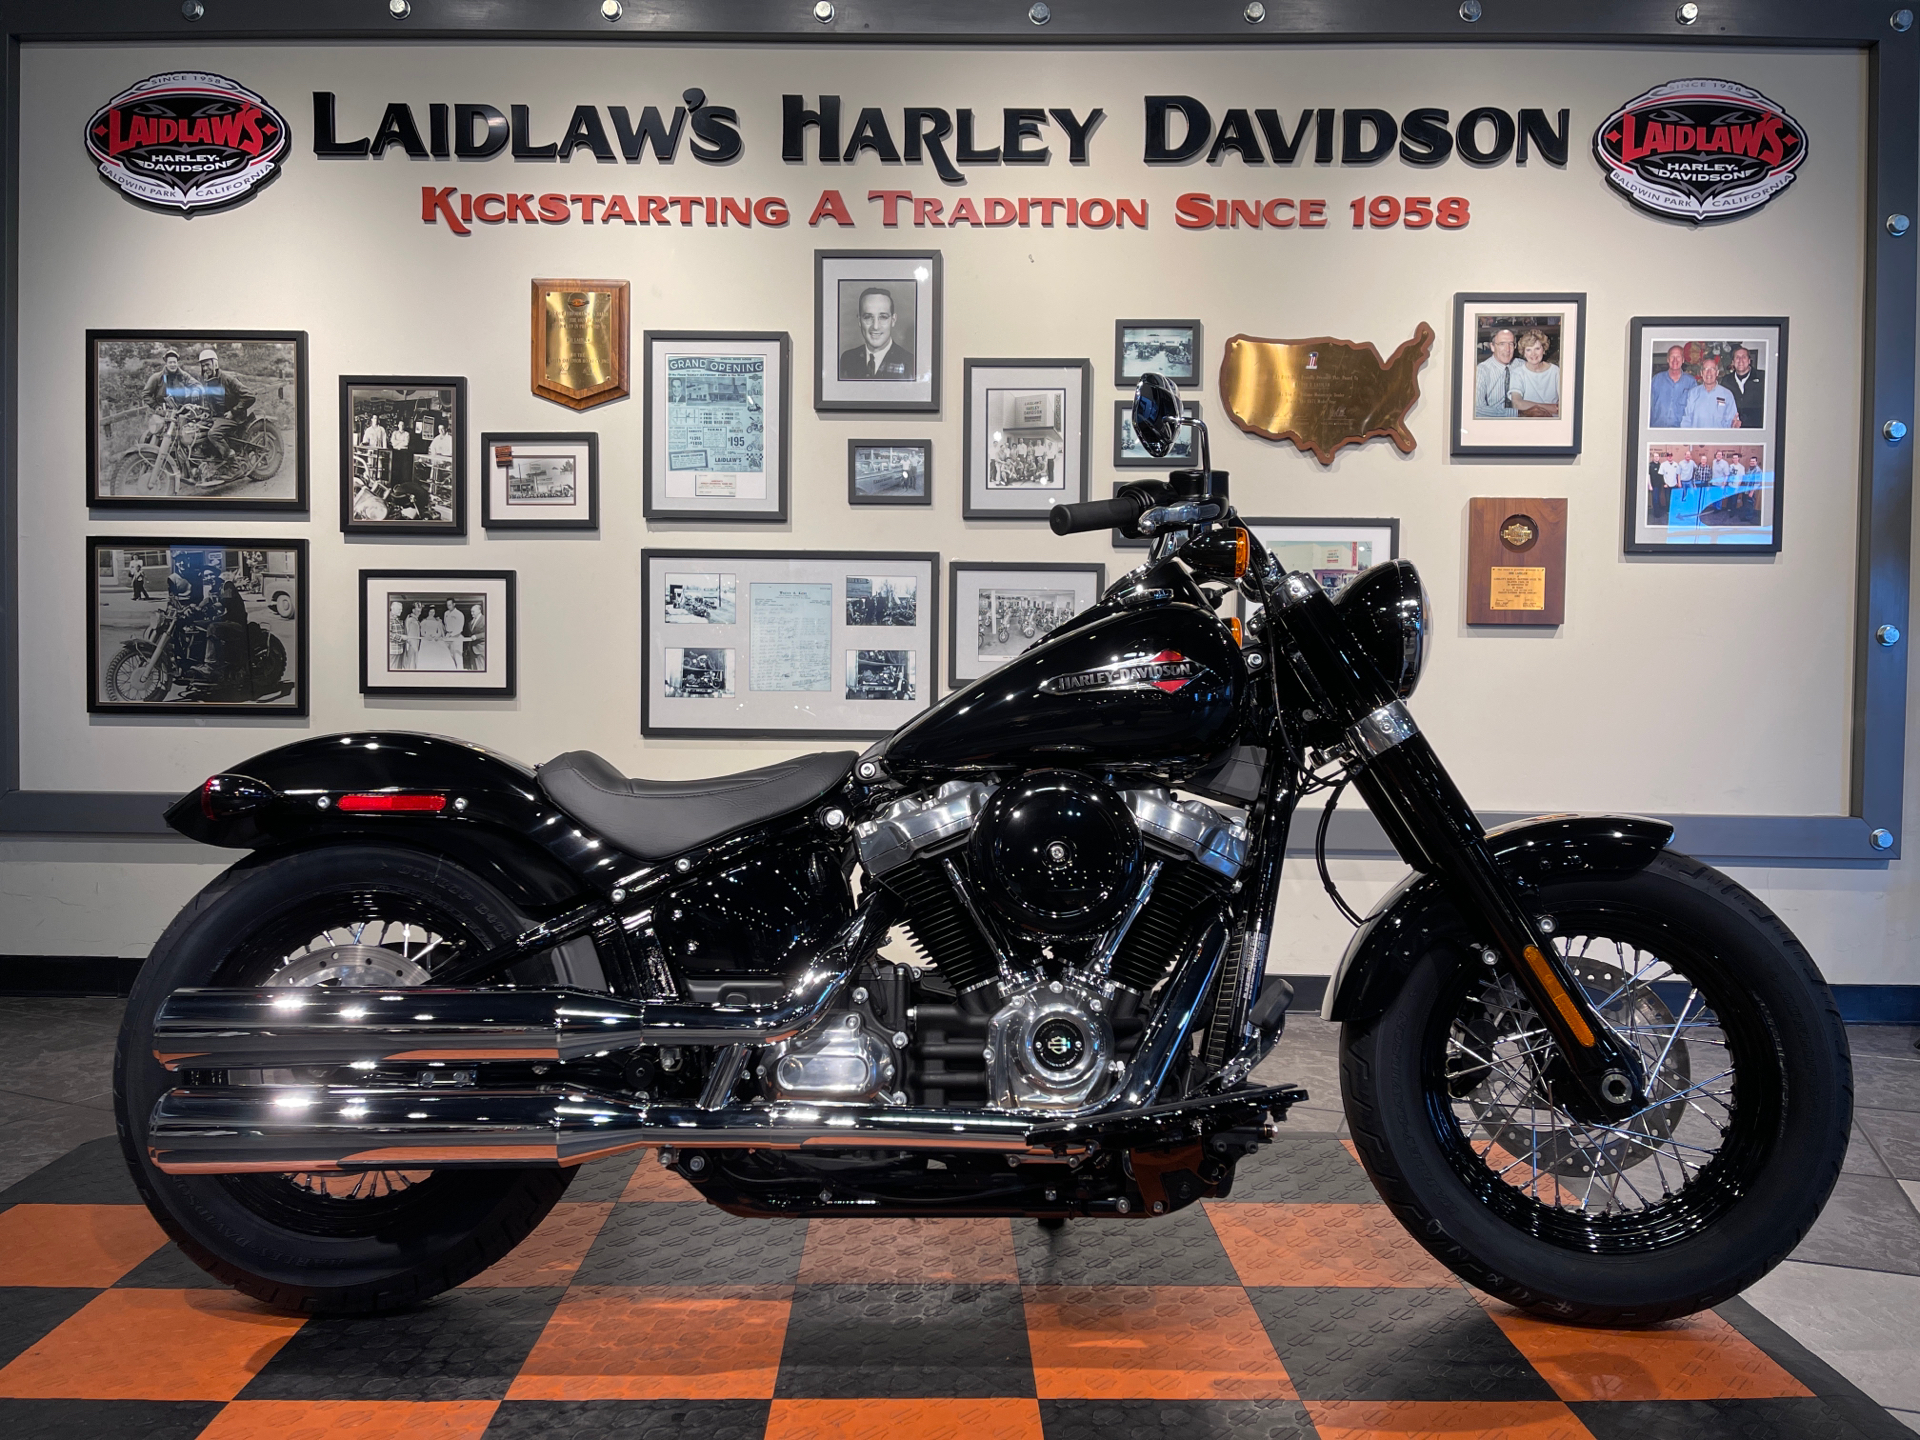 New 2021 Harley Davidson Softail Slim Vivid Black Baldwin Park Ca 28963